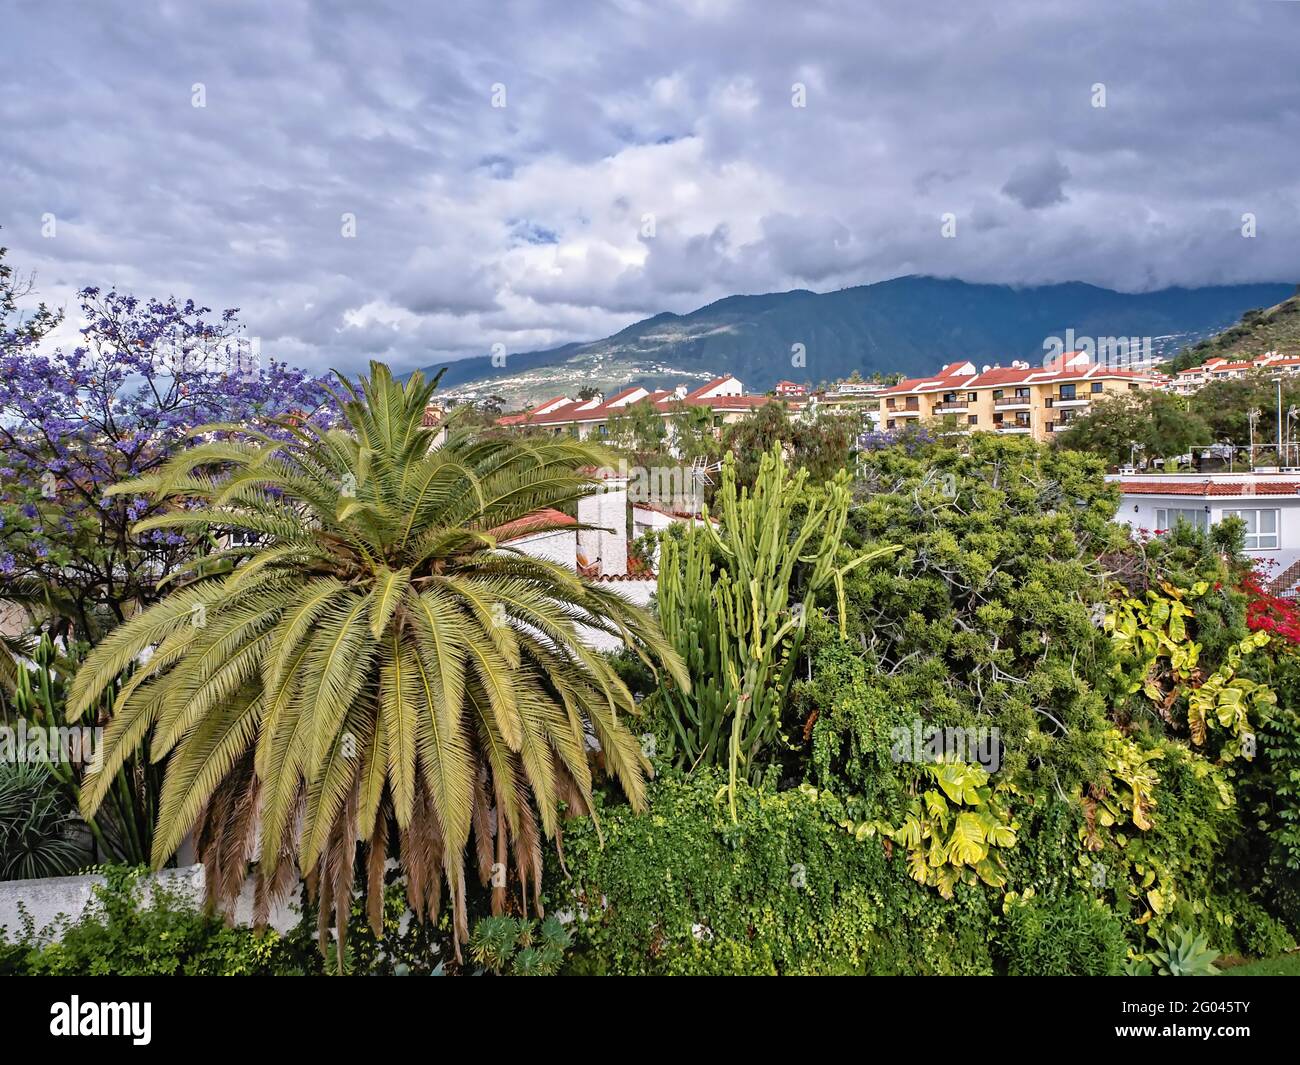 Puerto de la Cruz, sull'isola delle Canarie di Tenerife, vista sul verde quartiere di San Antonio con una vista verso Teide, che è coperto da un thi Foto Stock